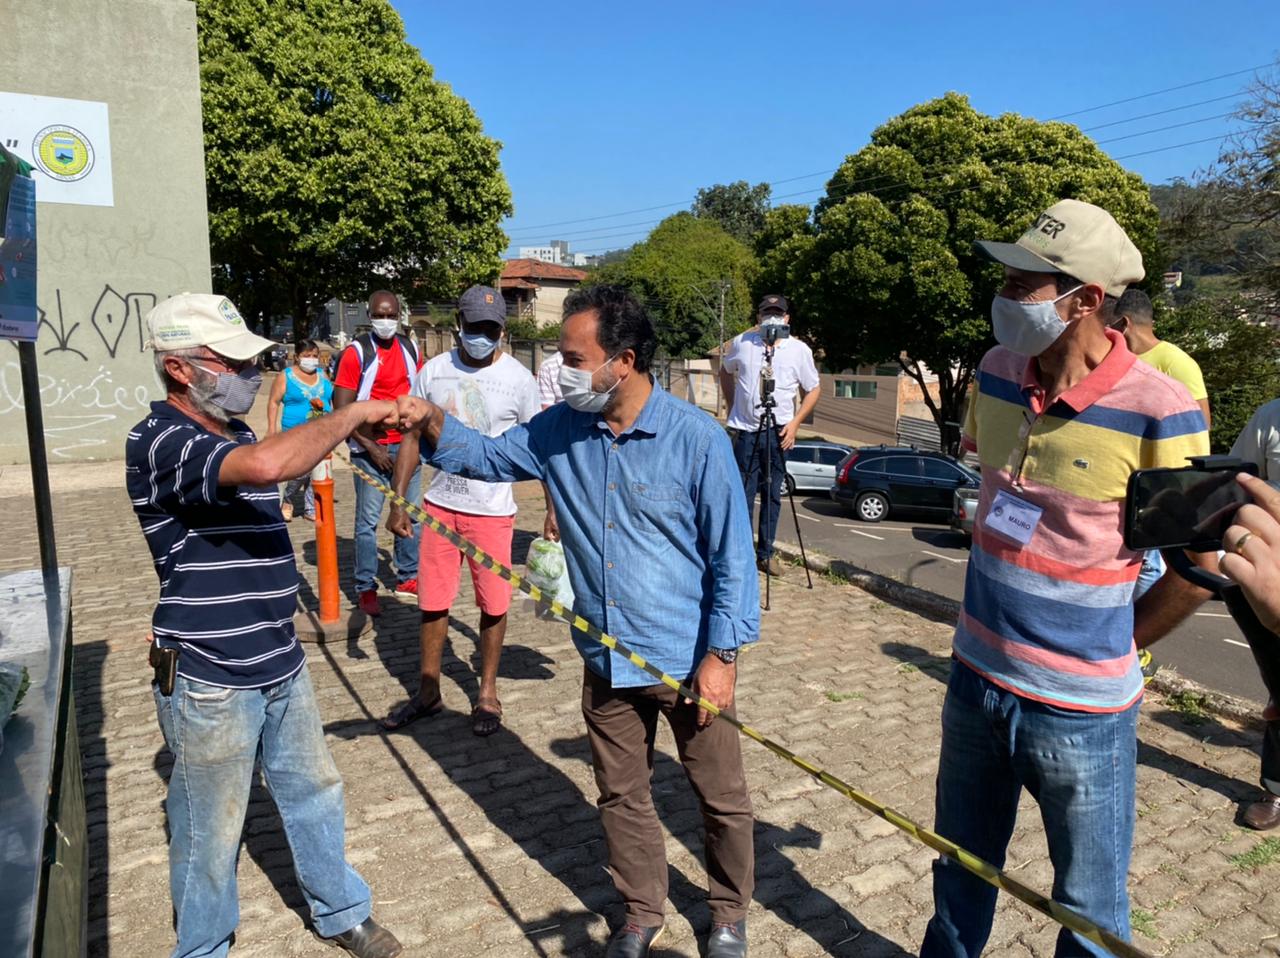 Prefeito de Itabira, Marco Antônio Lage, visitou a Feira Livre neste sábado (22) e foi recebido pelos feirantes e público presente